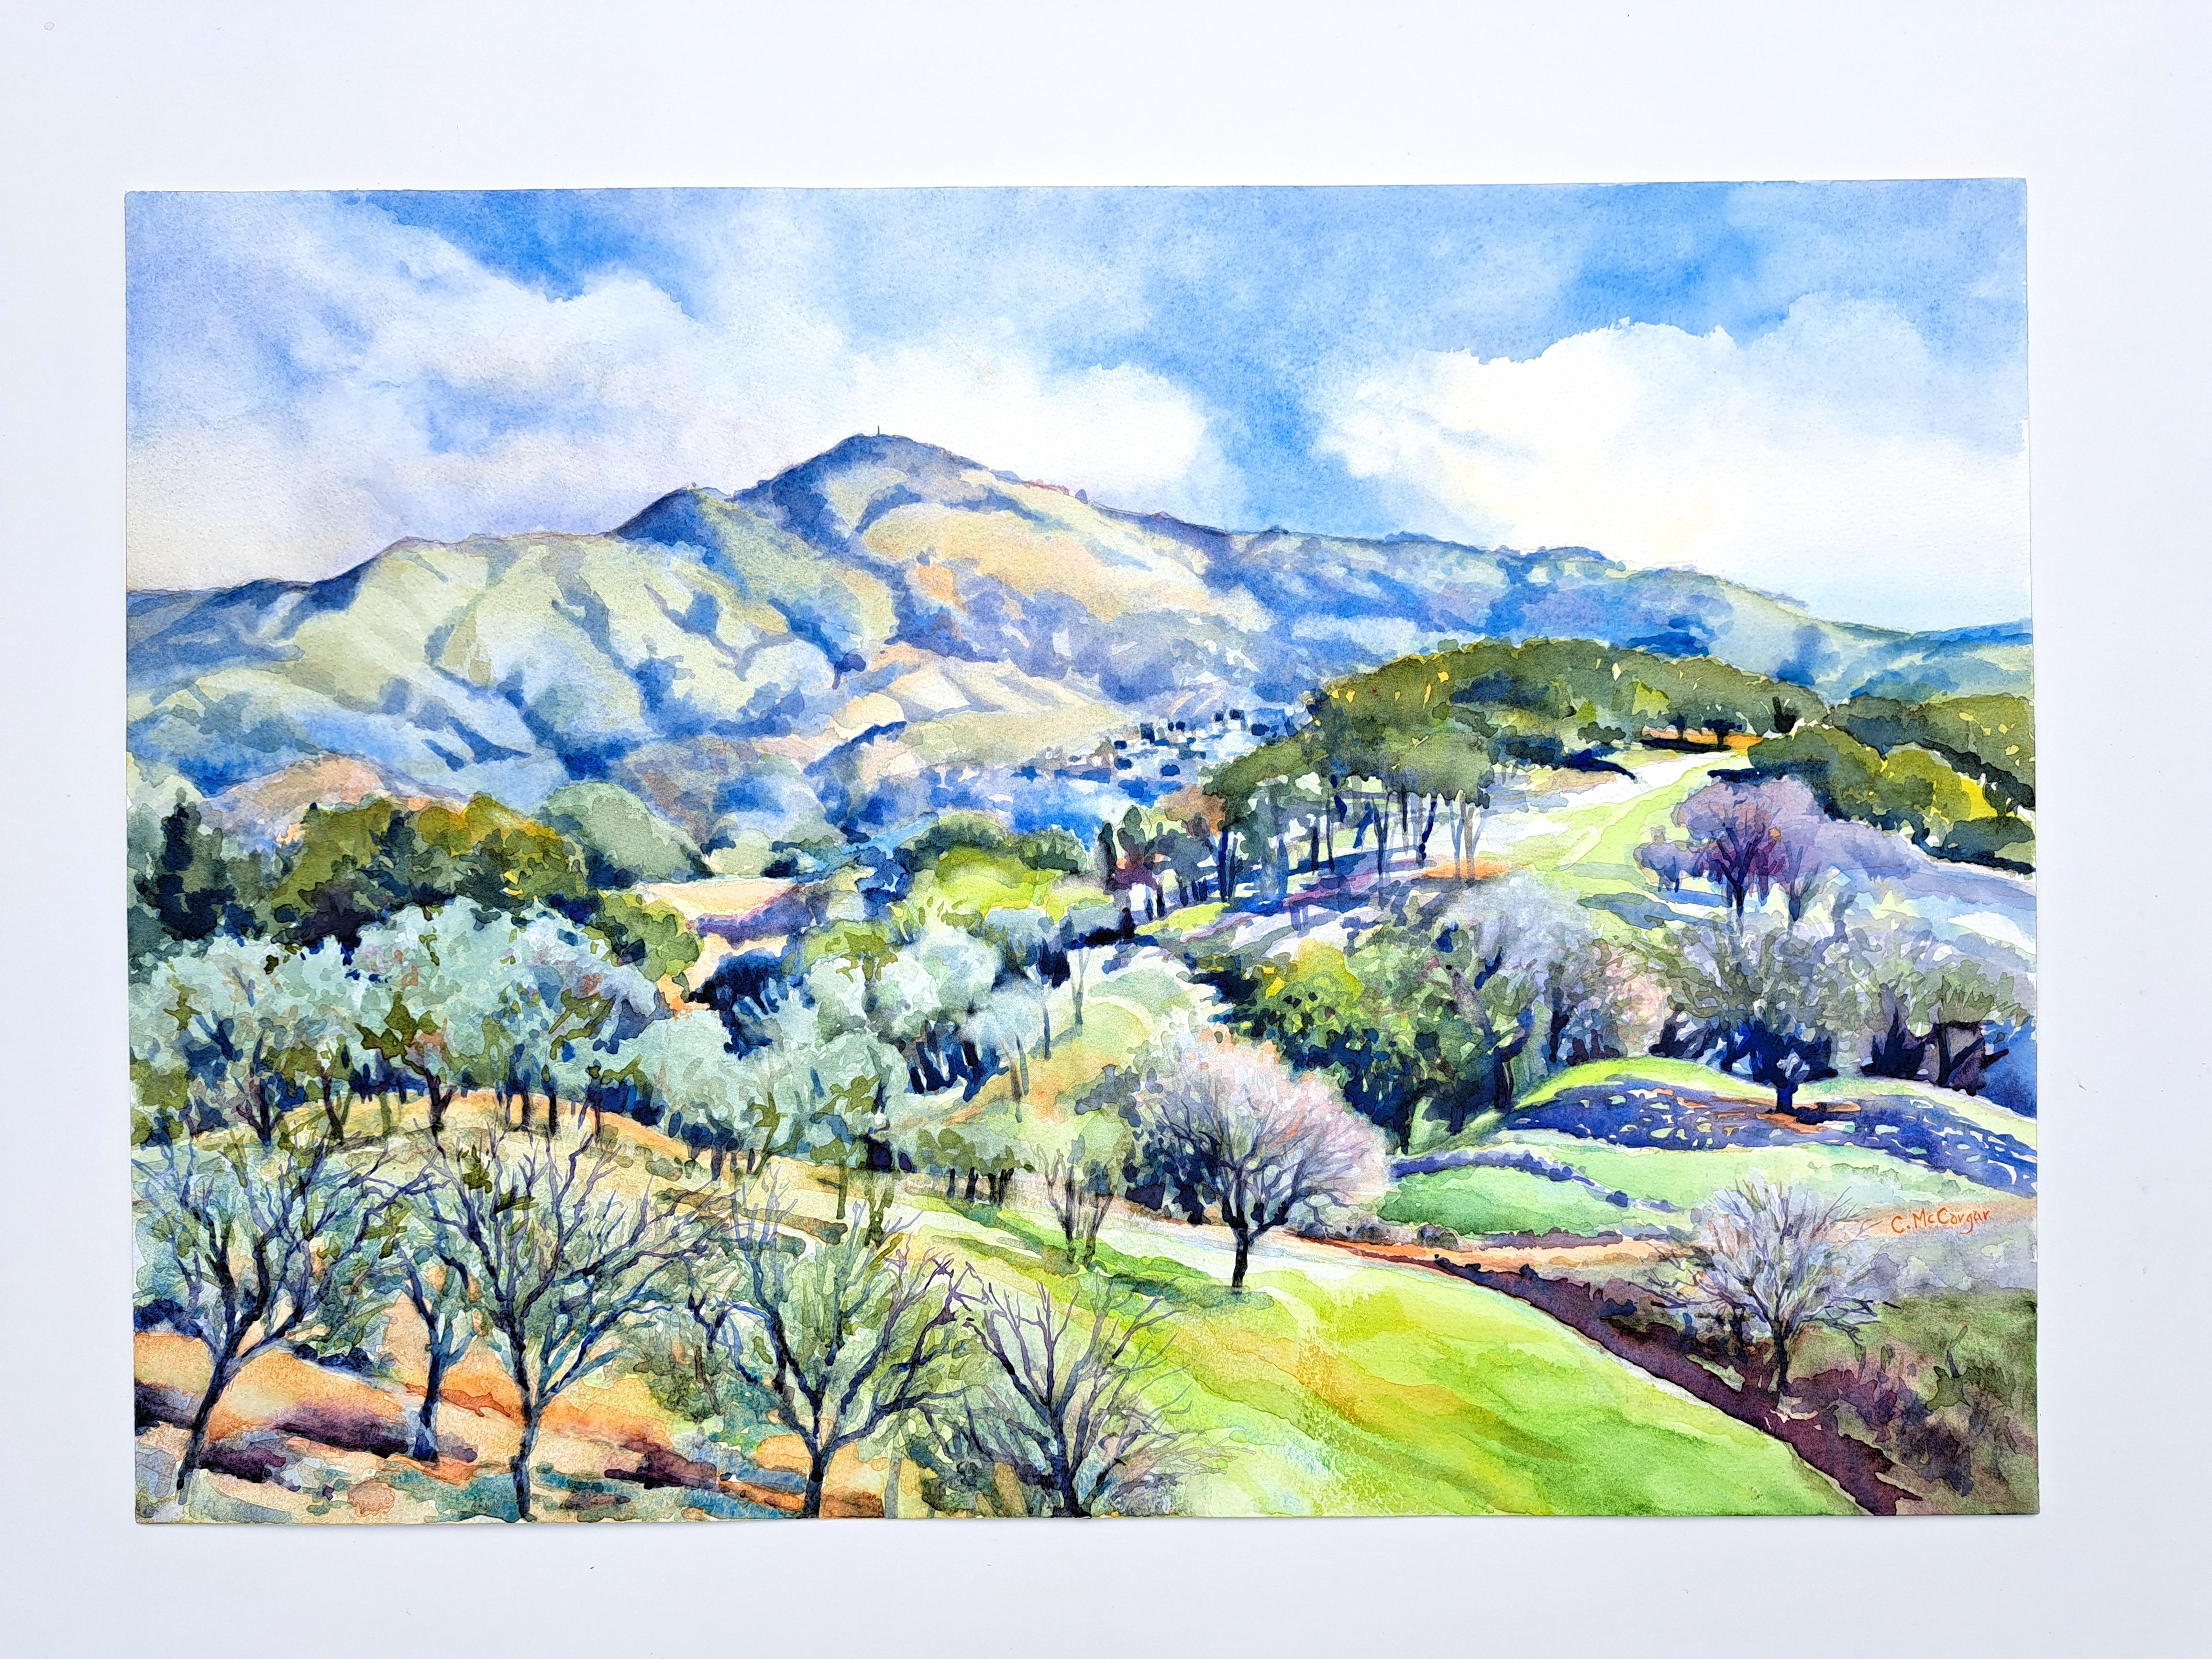 <p>Kommentare der Künstlerin<br>Die für ihre Landschaften bekannte Künstlerin Catherine McCargar präsentiert einen Blick auf den Mt. Diablo und seine umliegenden Ausläufer. Der große und stolze Berg blickt auf die grünen Hänge und üppigen Bäume. Die